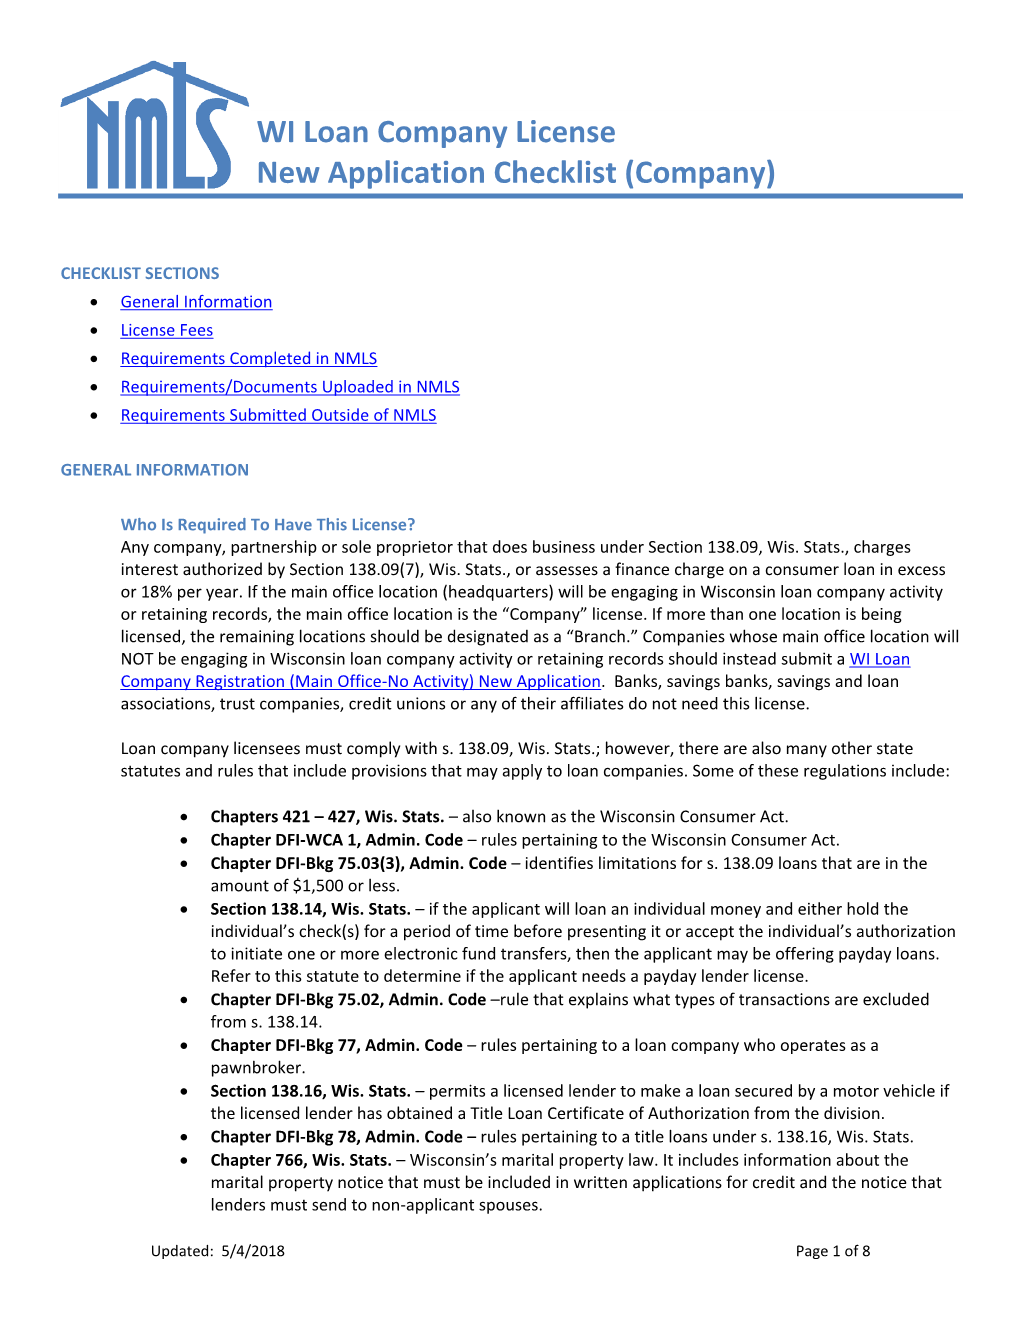 WI Loan Company License New Application Checklist (Company)